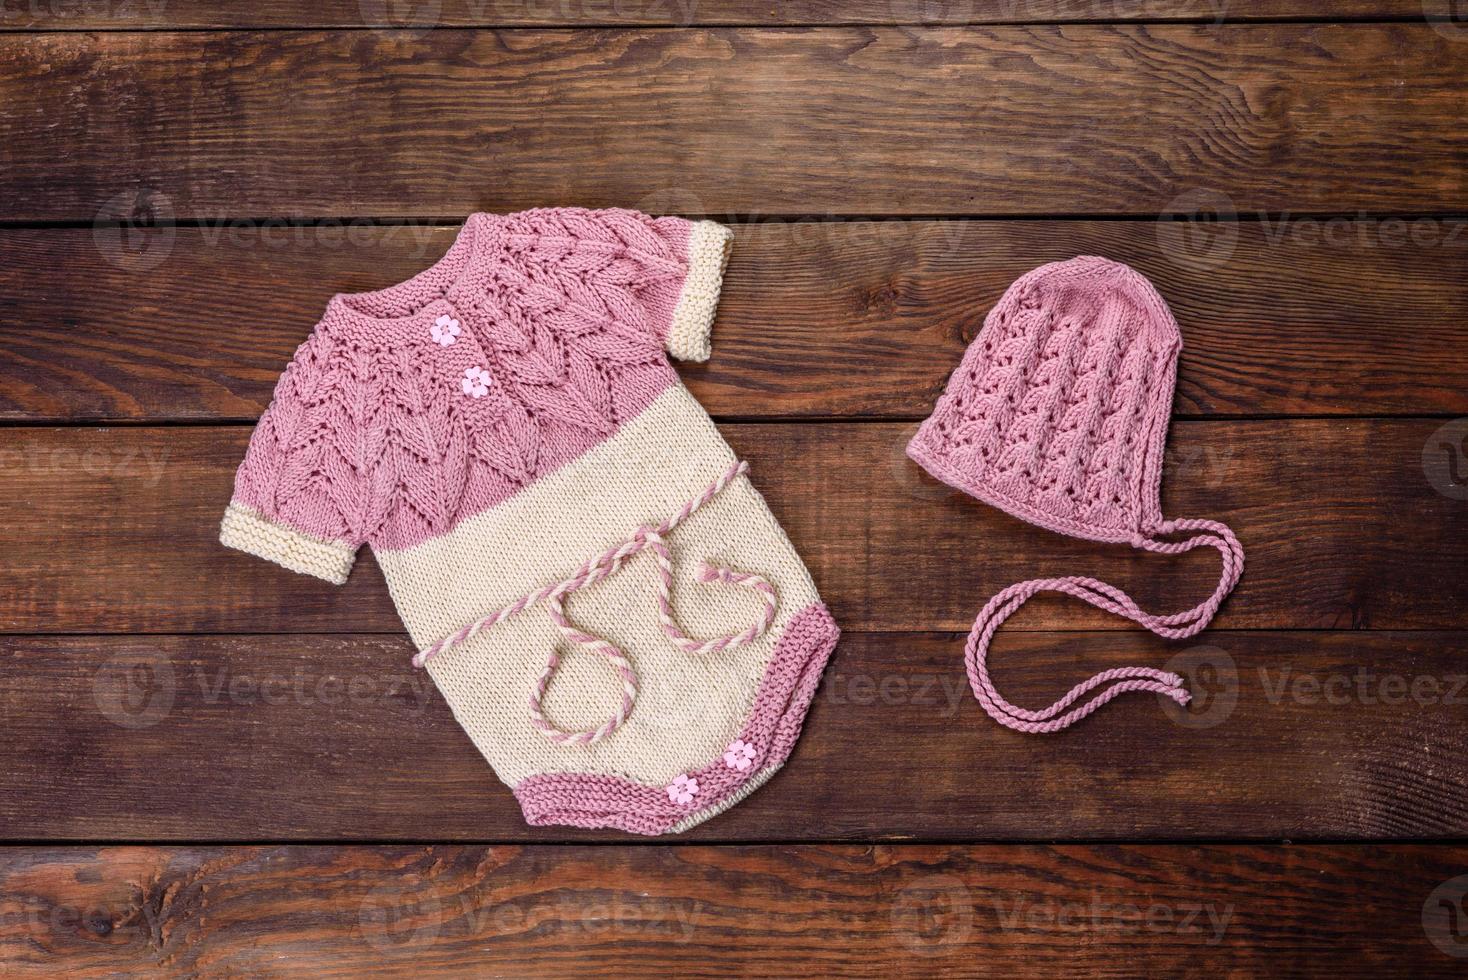 Cerco Remo Responder ropa de punto hecha de hilos de lana natural para un bebé recién nacido  2983256 Foto de stock en Vecteezy